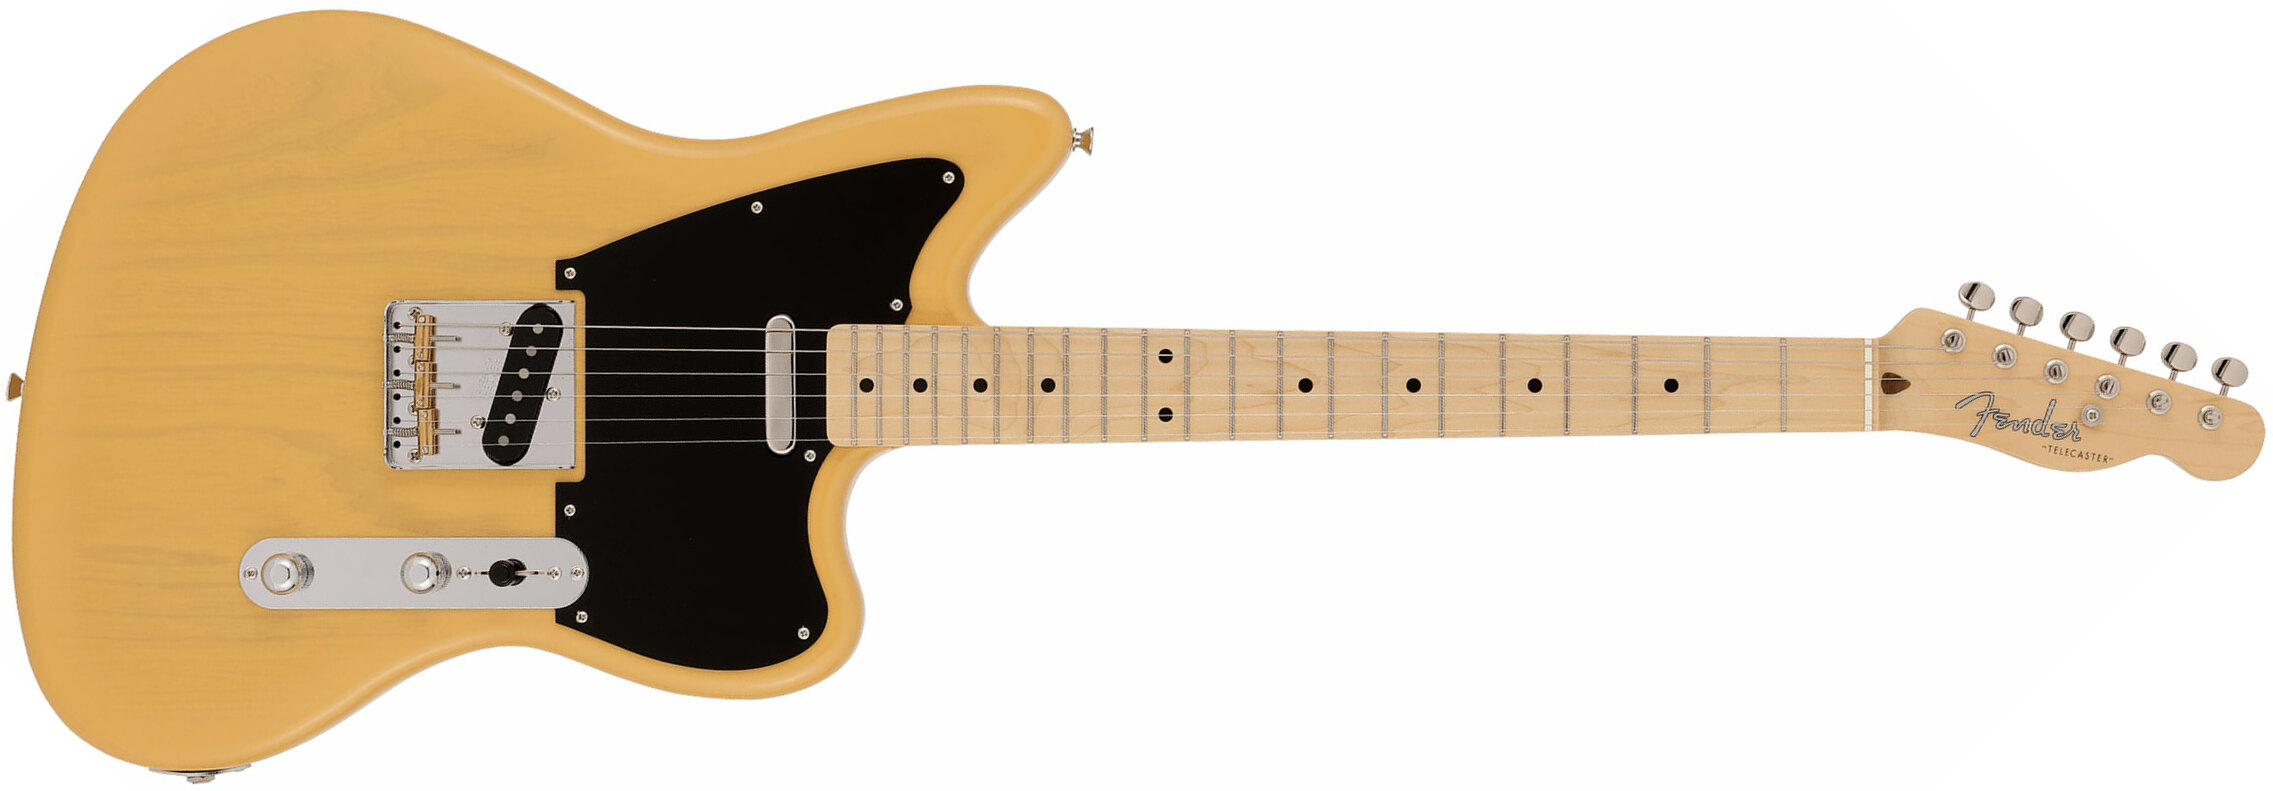 Fender Tele Offset Ltd Jap 2s Ht Mn - Butterscotch Blonde - Retro rock electric guitar - Main picture